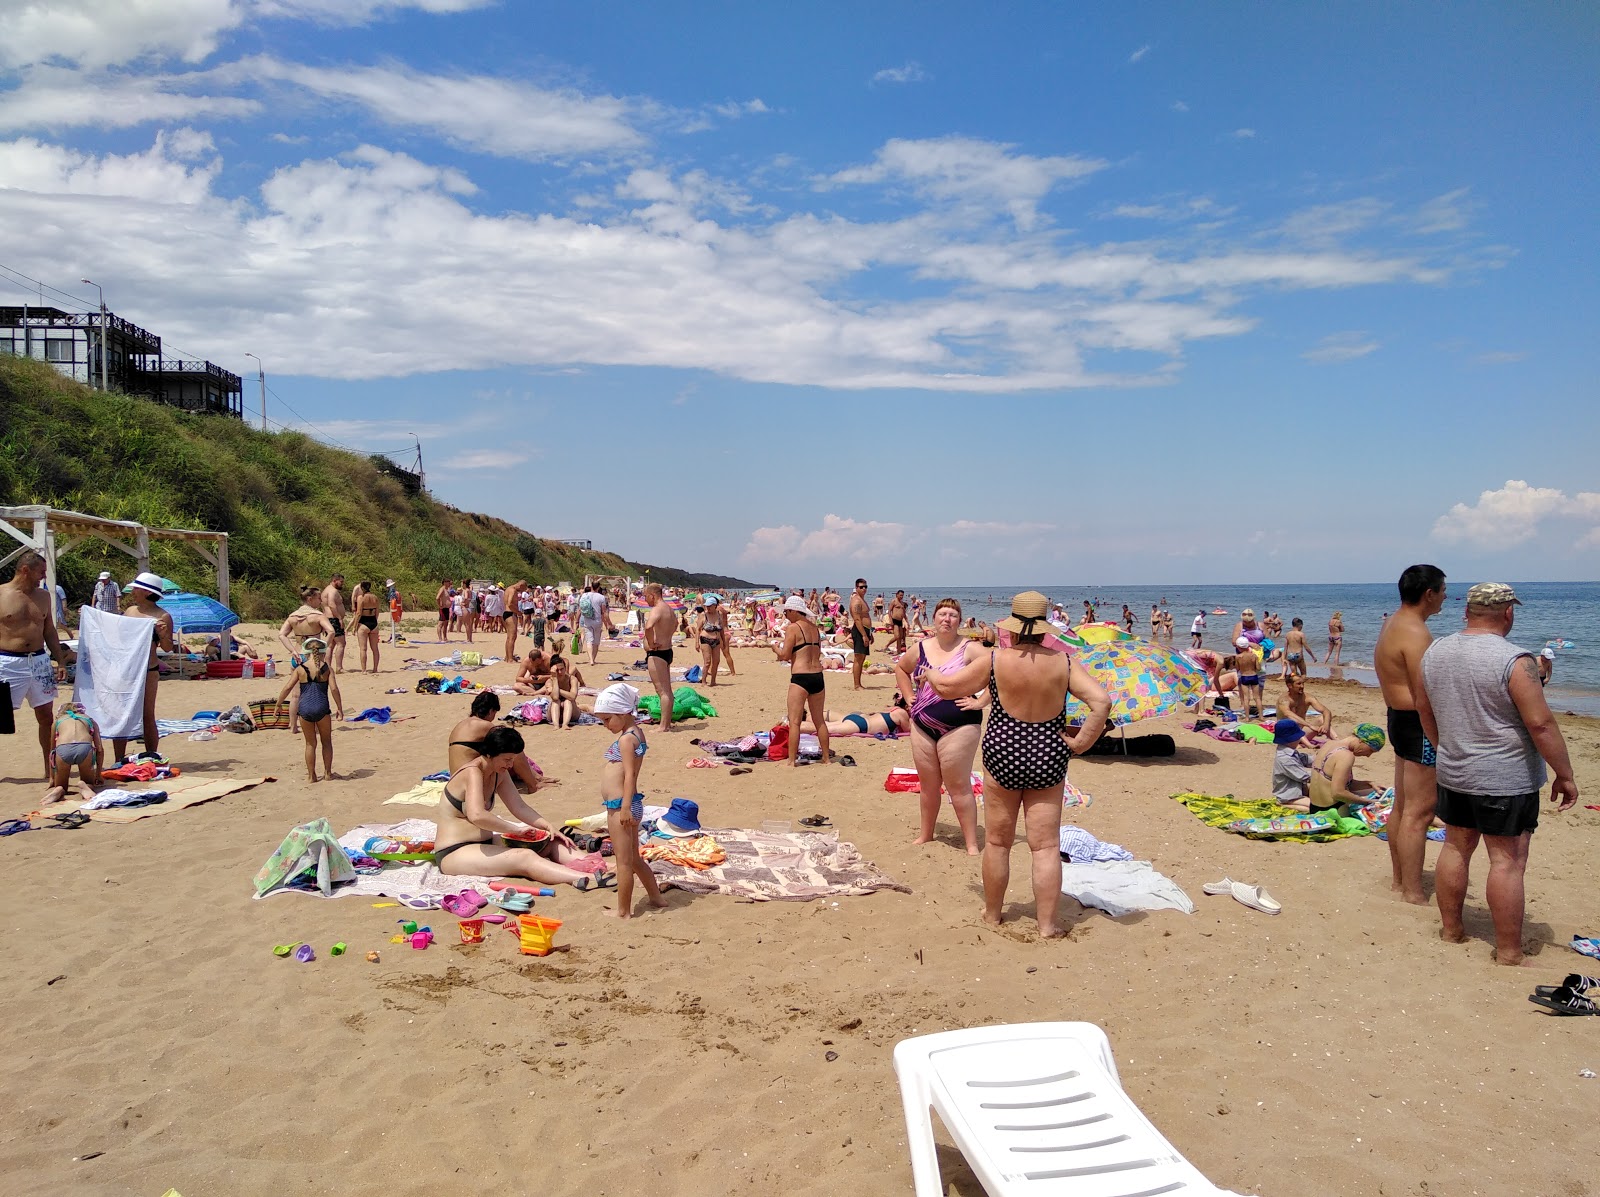 Zdjęcie Kuchugury beach - popularne miejsce wśród znawców relaksu